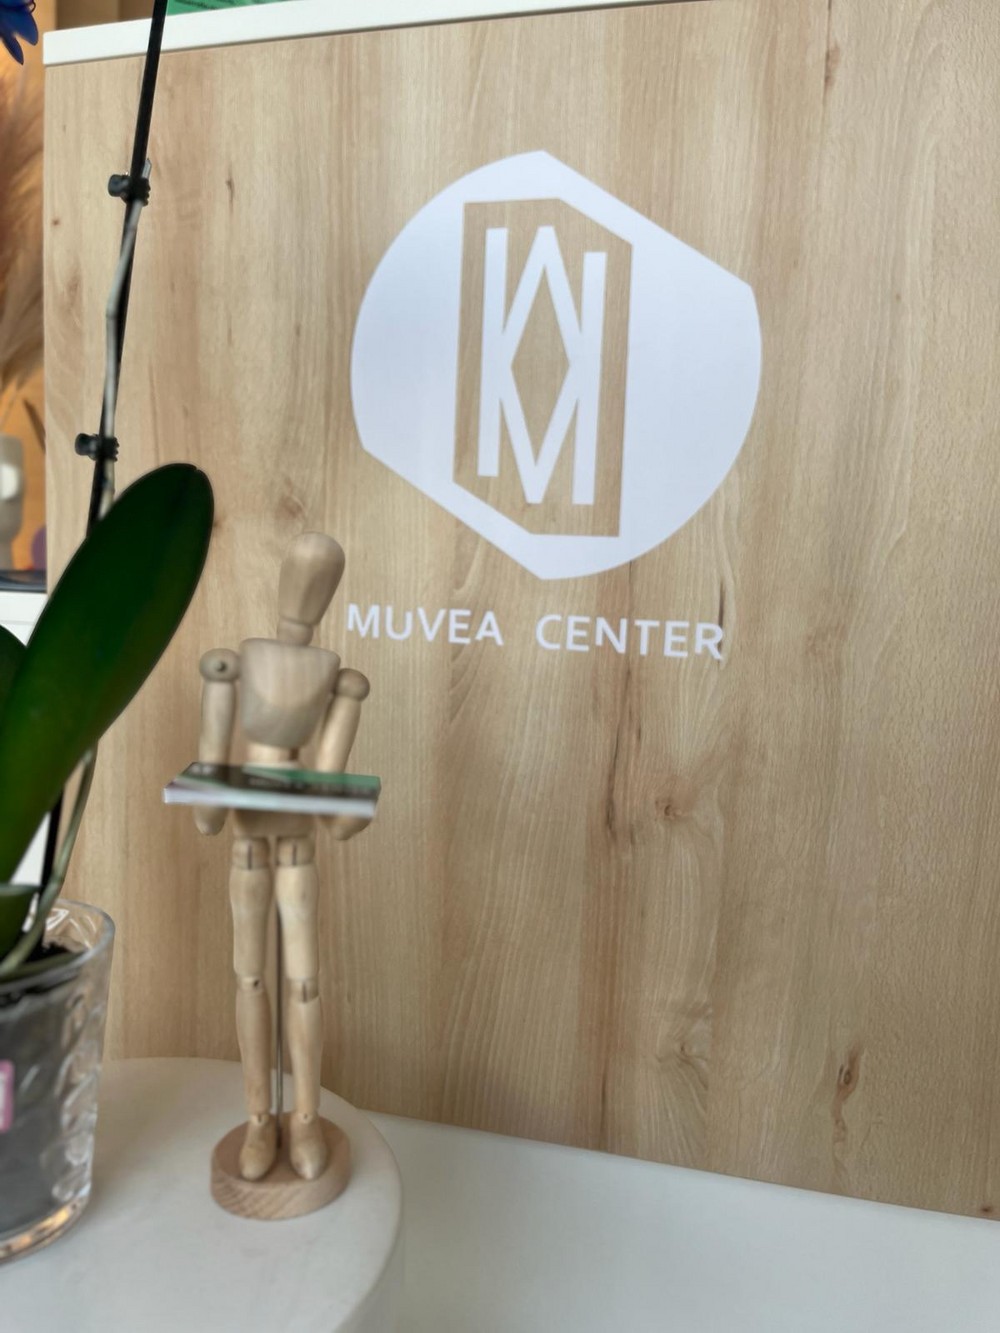 Muvea Center ayuda a mejorar la calidad de vida con su oferta de actividades y servicios